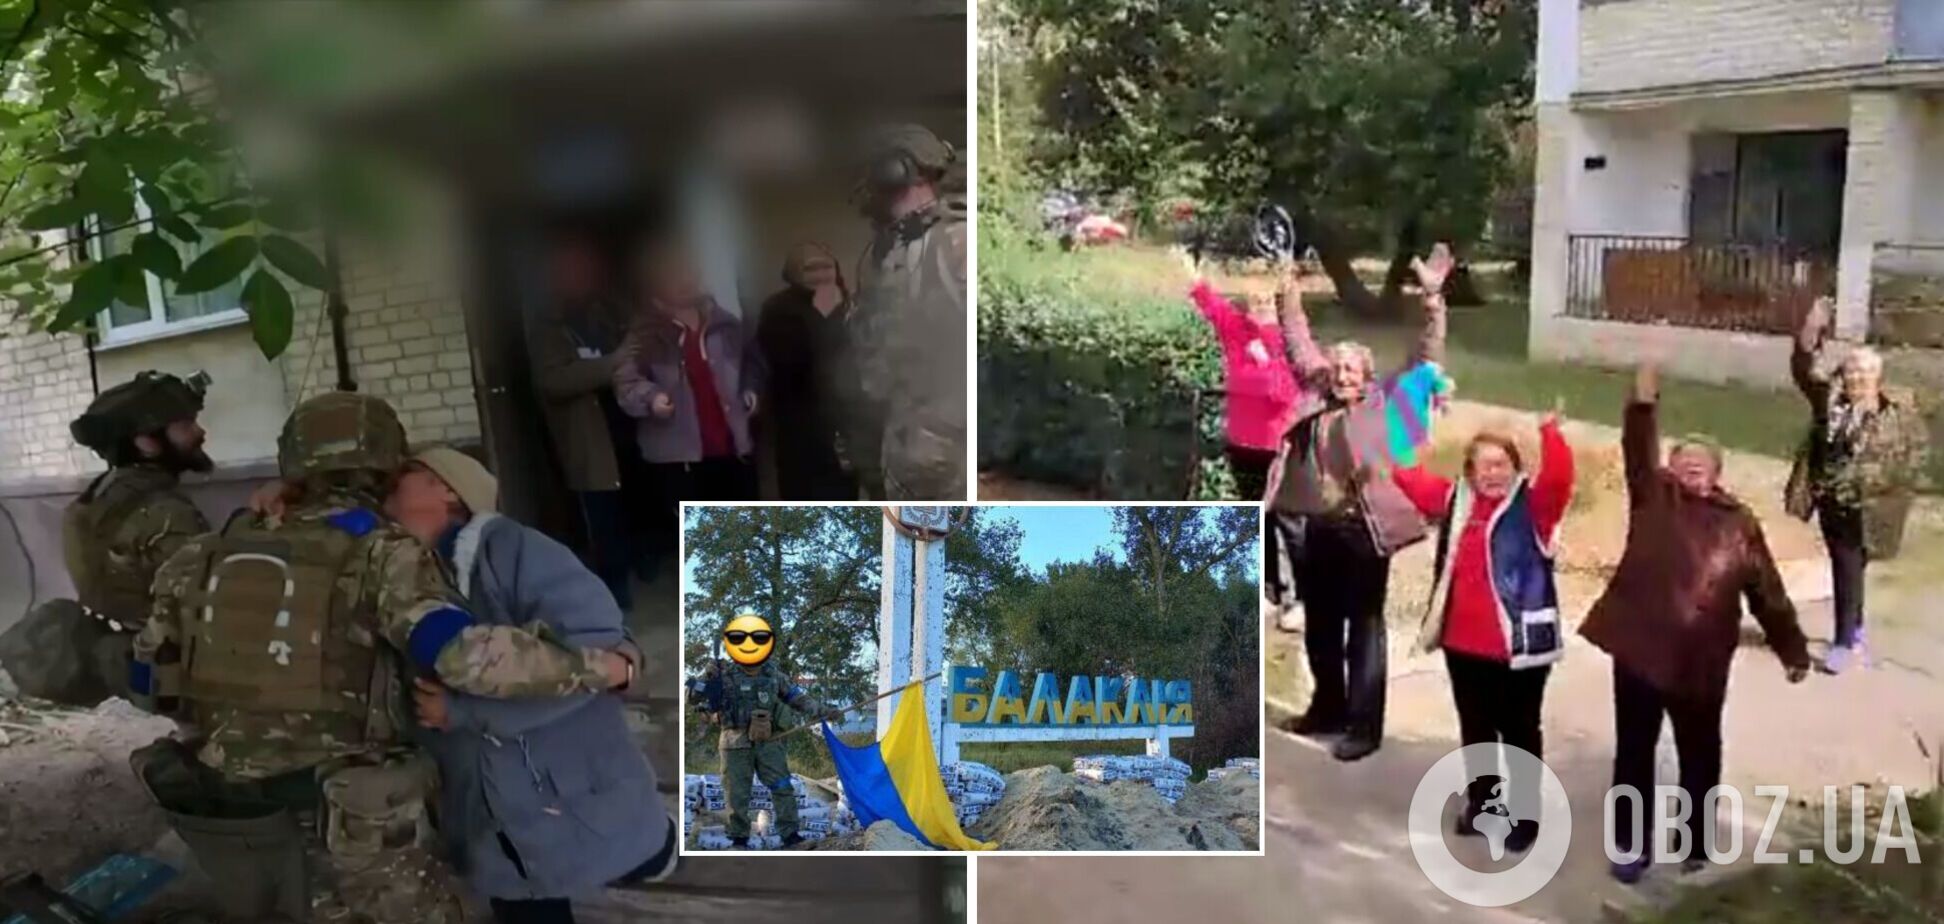 З прапорами України і зі сльозами щастя: як українці зустрічали визволителів після 6 місяців російської окупації. Відео 